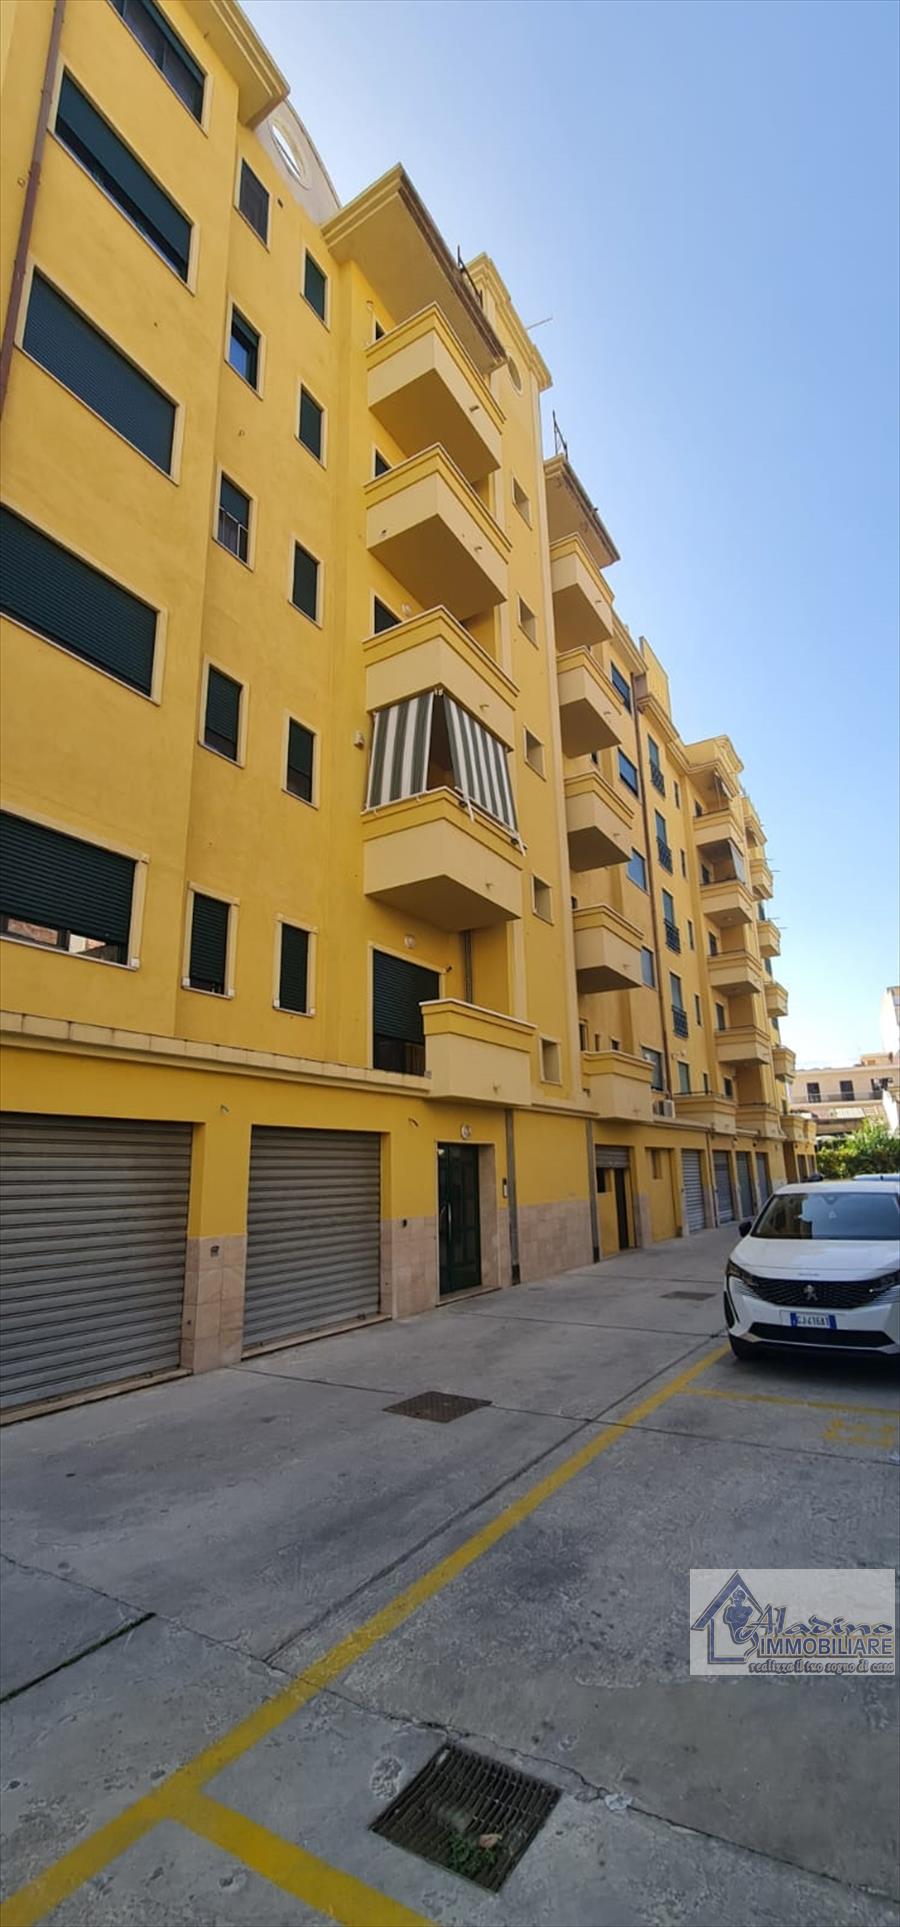 Appartamento in vendita a Reggio Calabria, 4 locali, prezzo € 139.000 | PortaleAgenzieImmobiliari.it